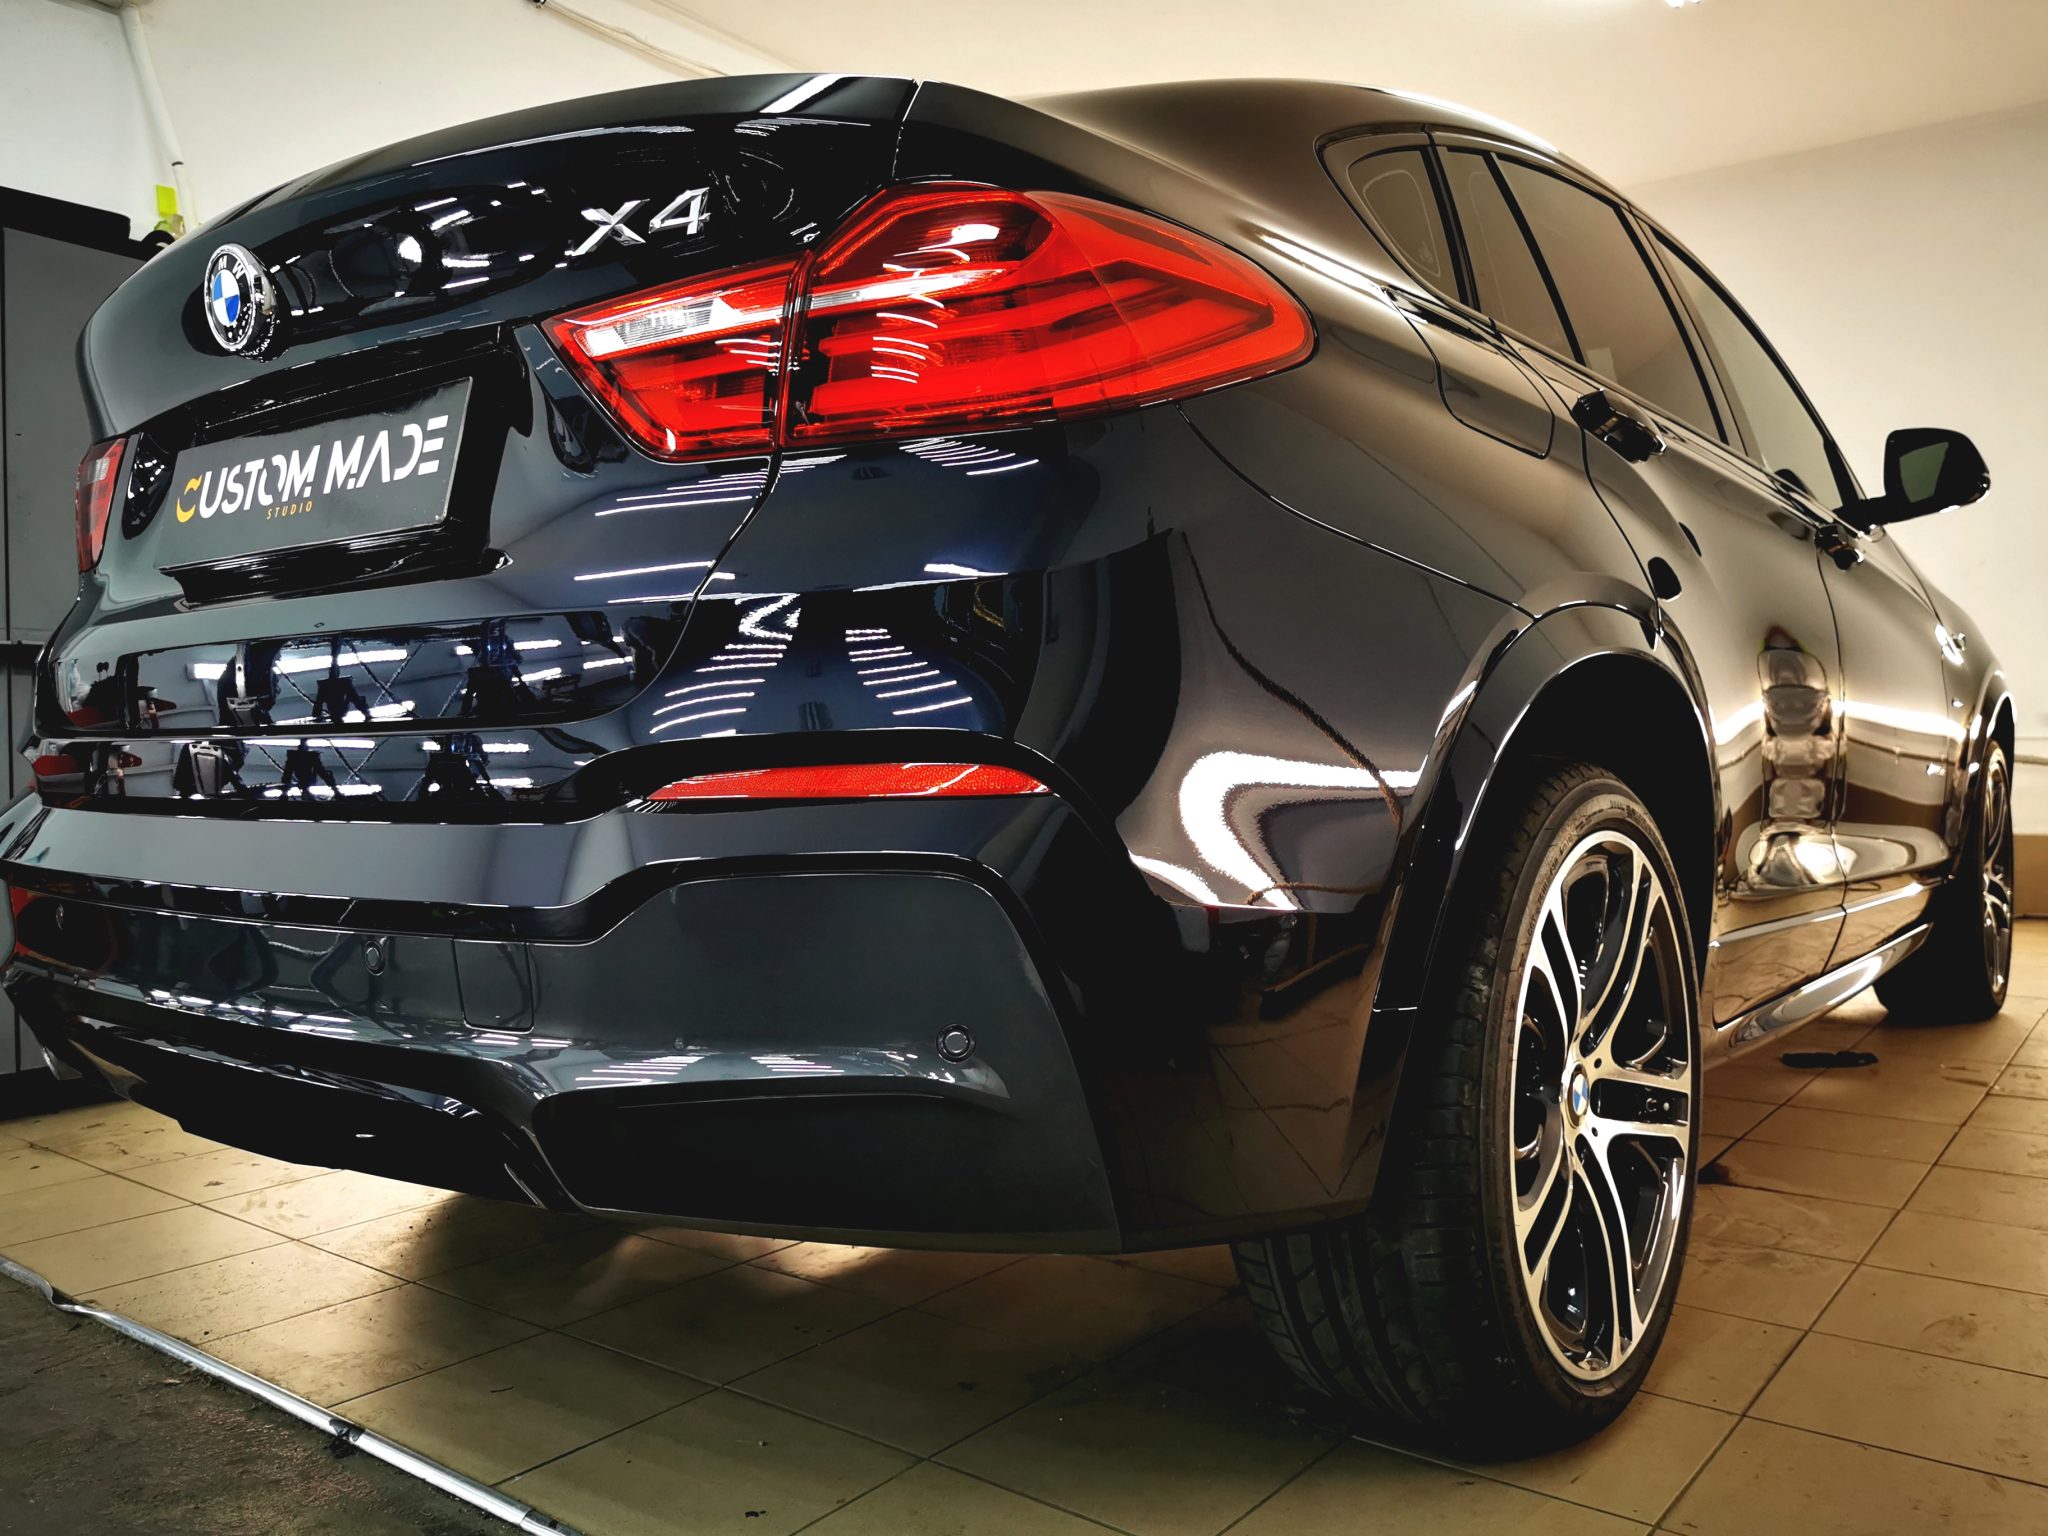 BMW X4 Custom Made Studio Przyciemnianie szyb